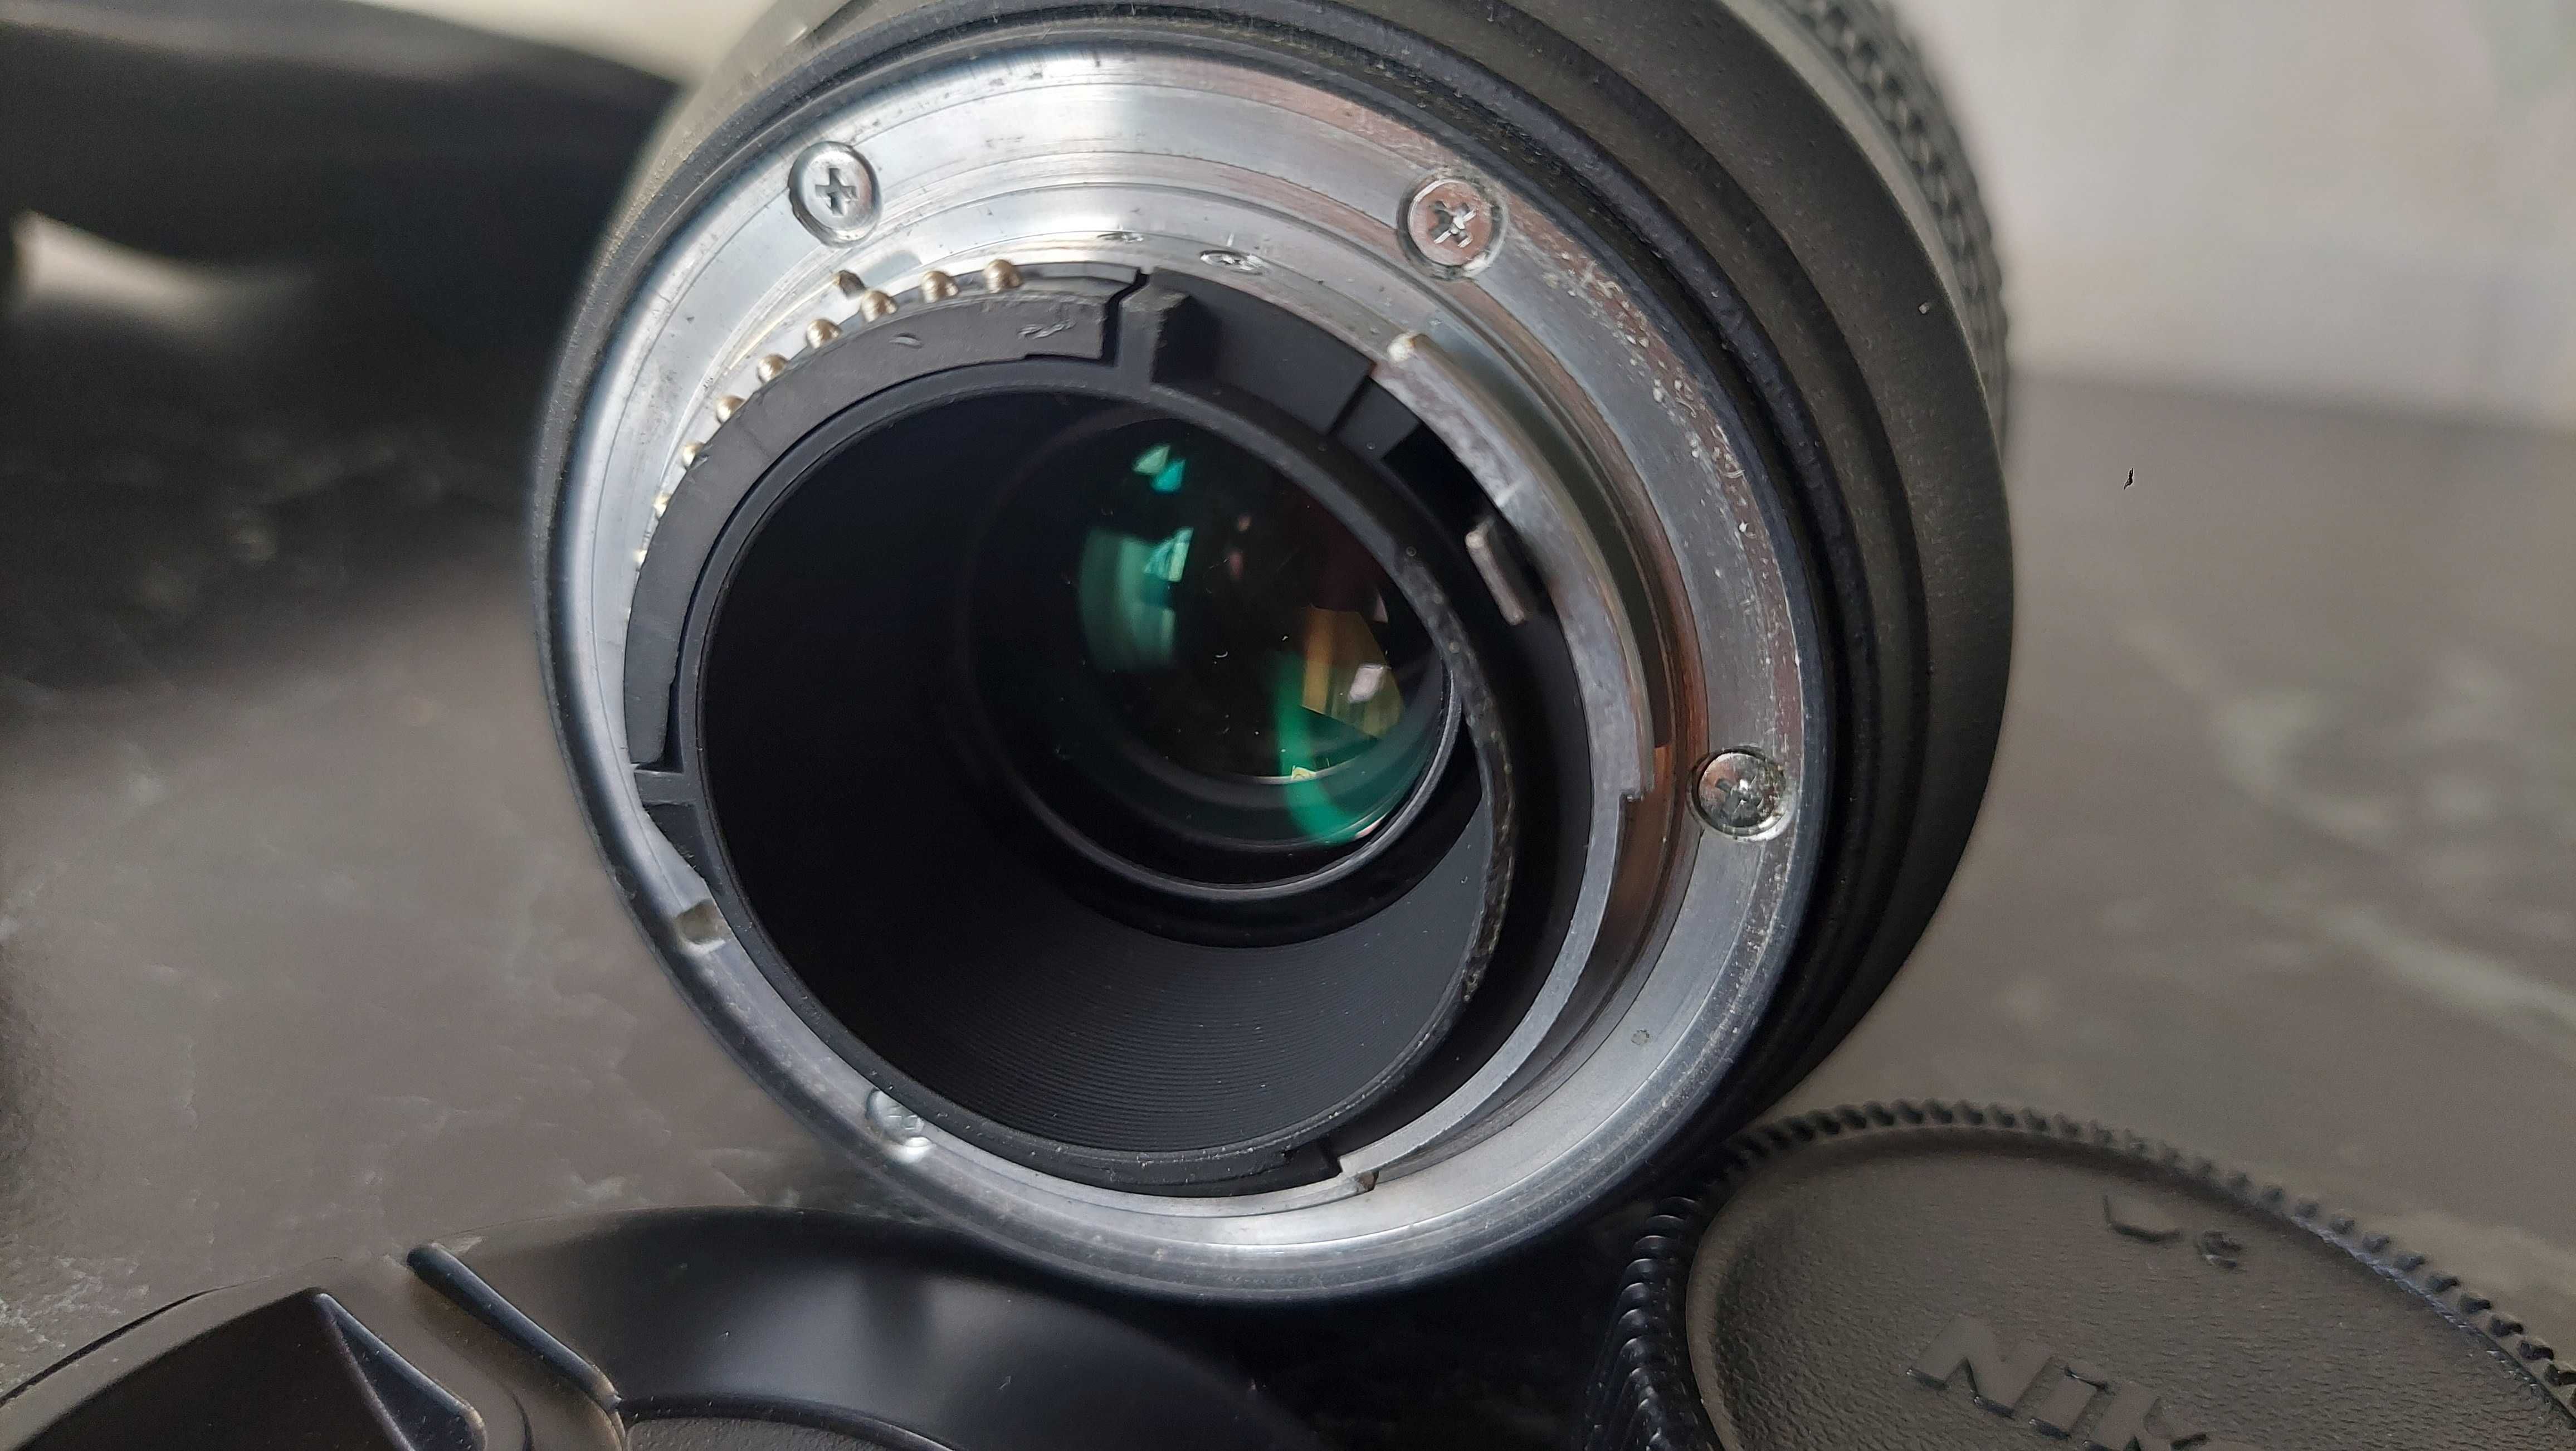 Об'єктив NikonAF-S Nikkor70-300mm 1:4.5-5.6G ED з фільтром MASSA67mmUV